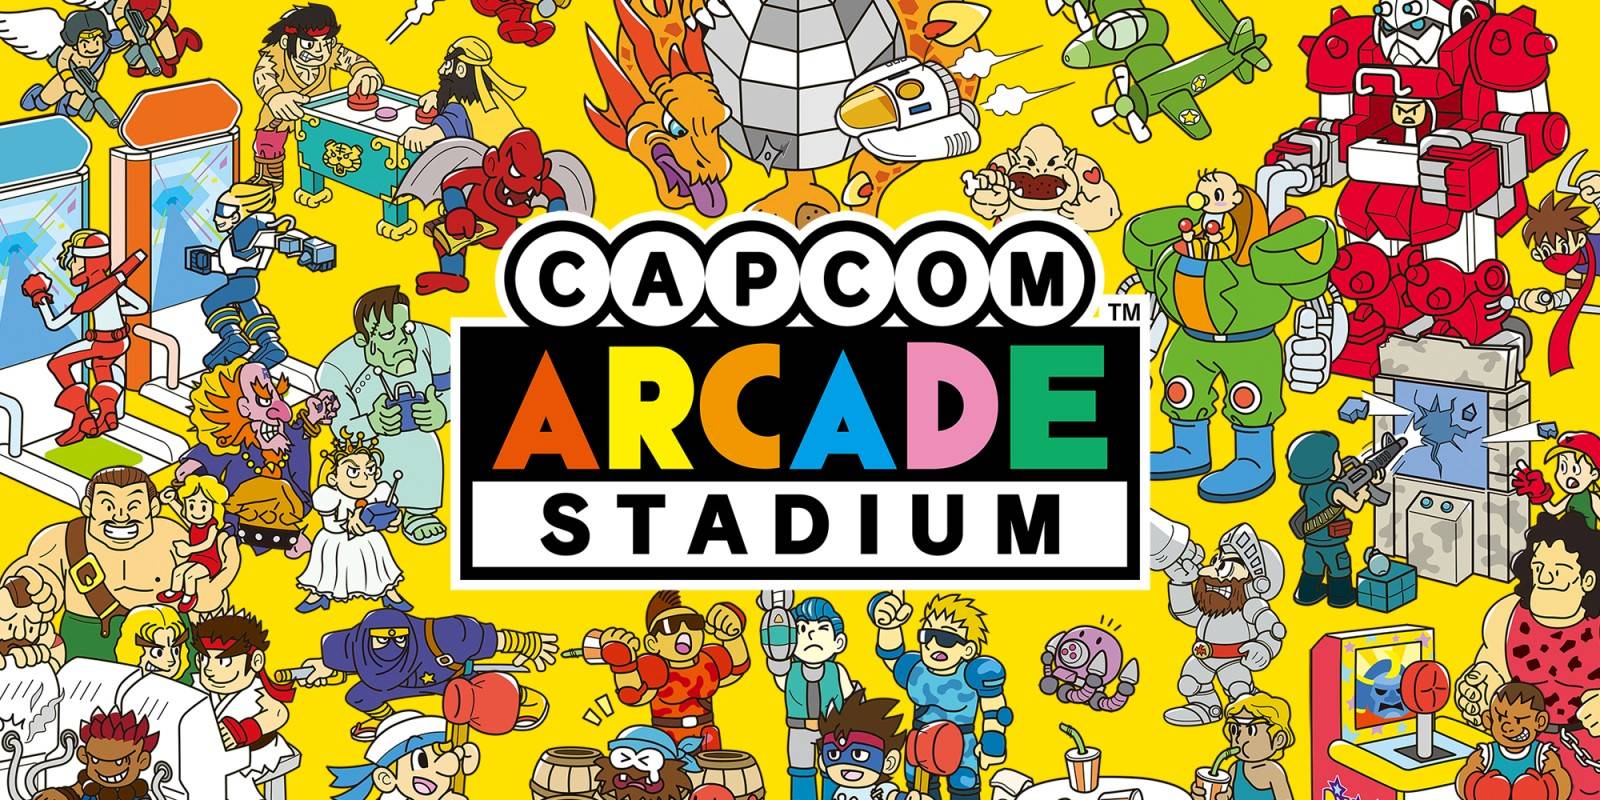 Capcom Arcade Stadium llega a las demás plataformas este 25 de Mayo, ademas se añaden mas títulos y características.